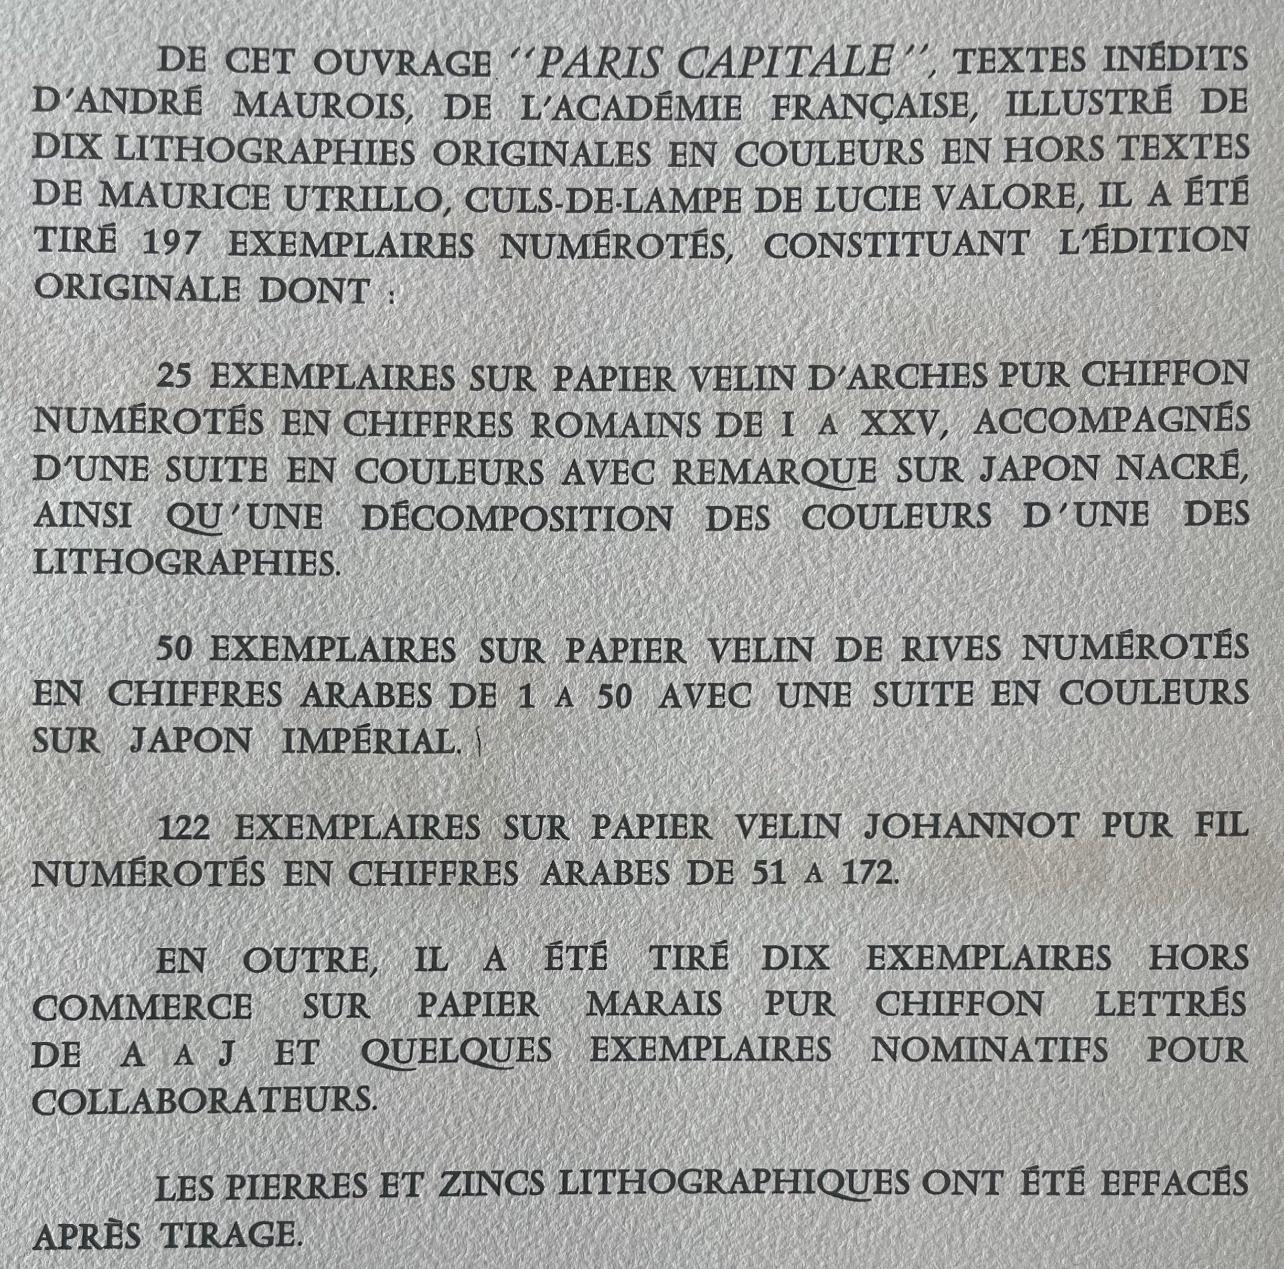 à Notre-Dame (La Cité), Paris Capitale, Maurice Utrillo en vente 9